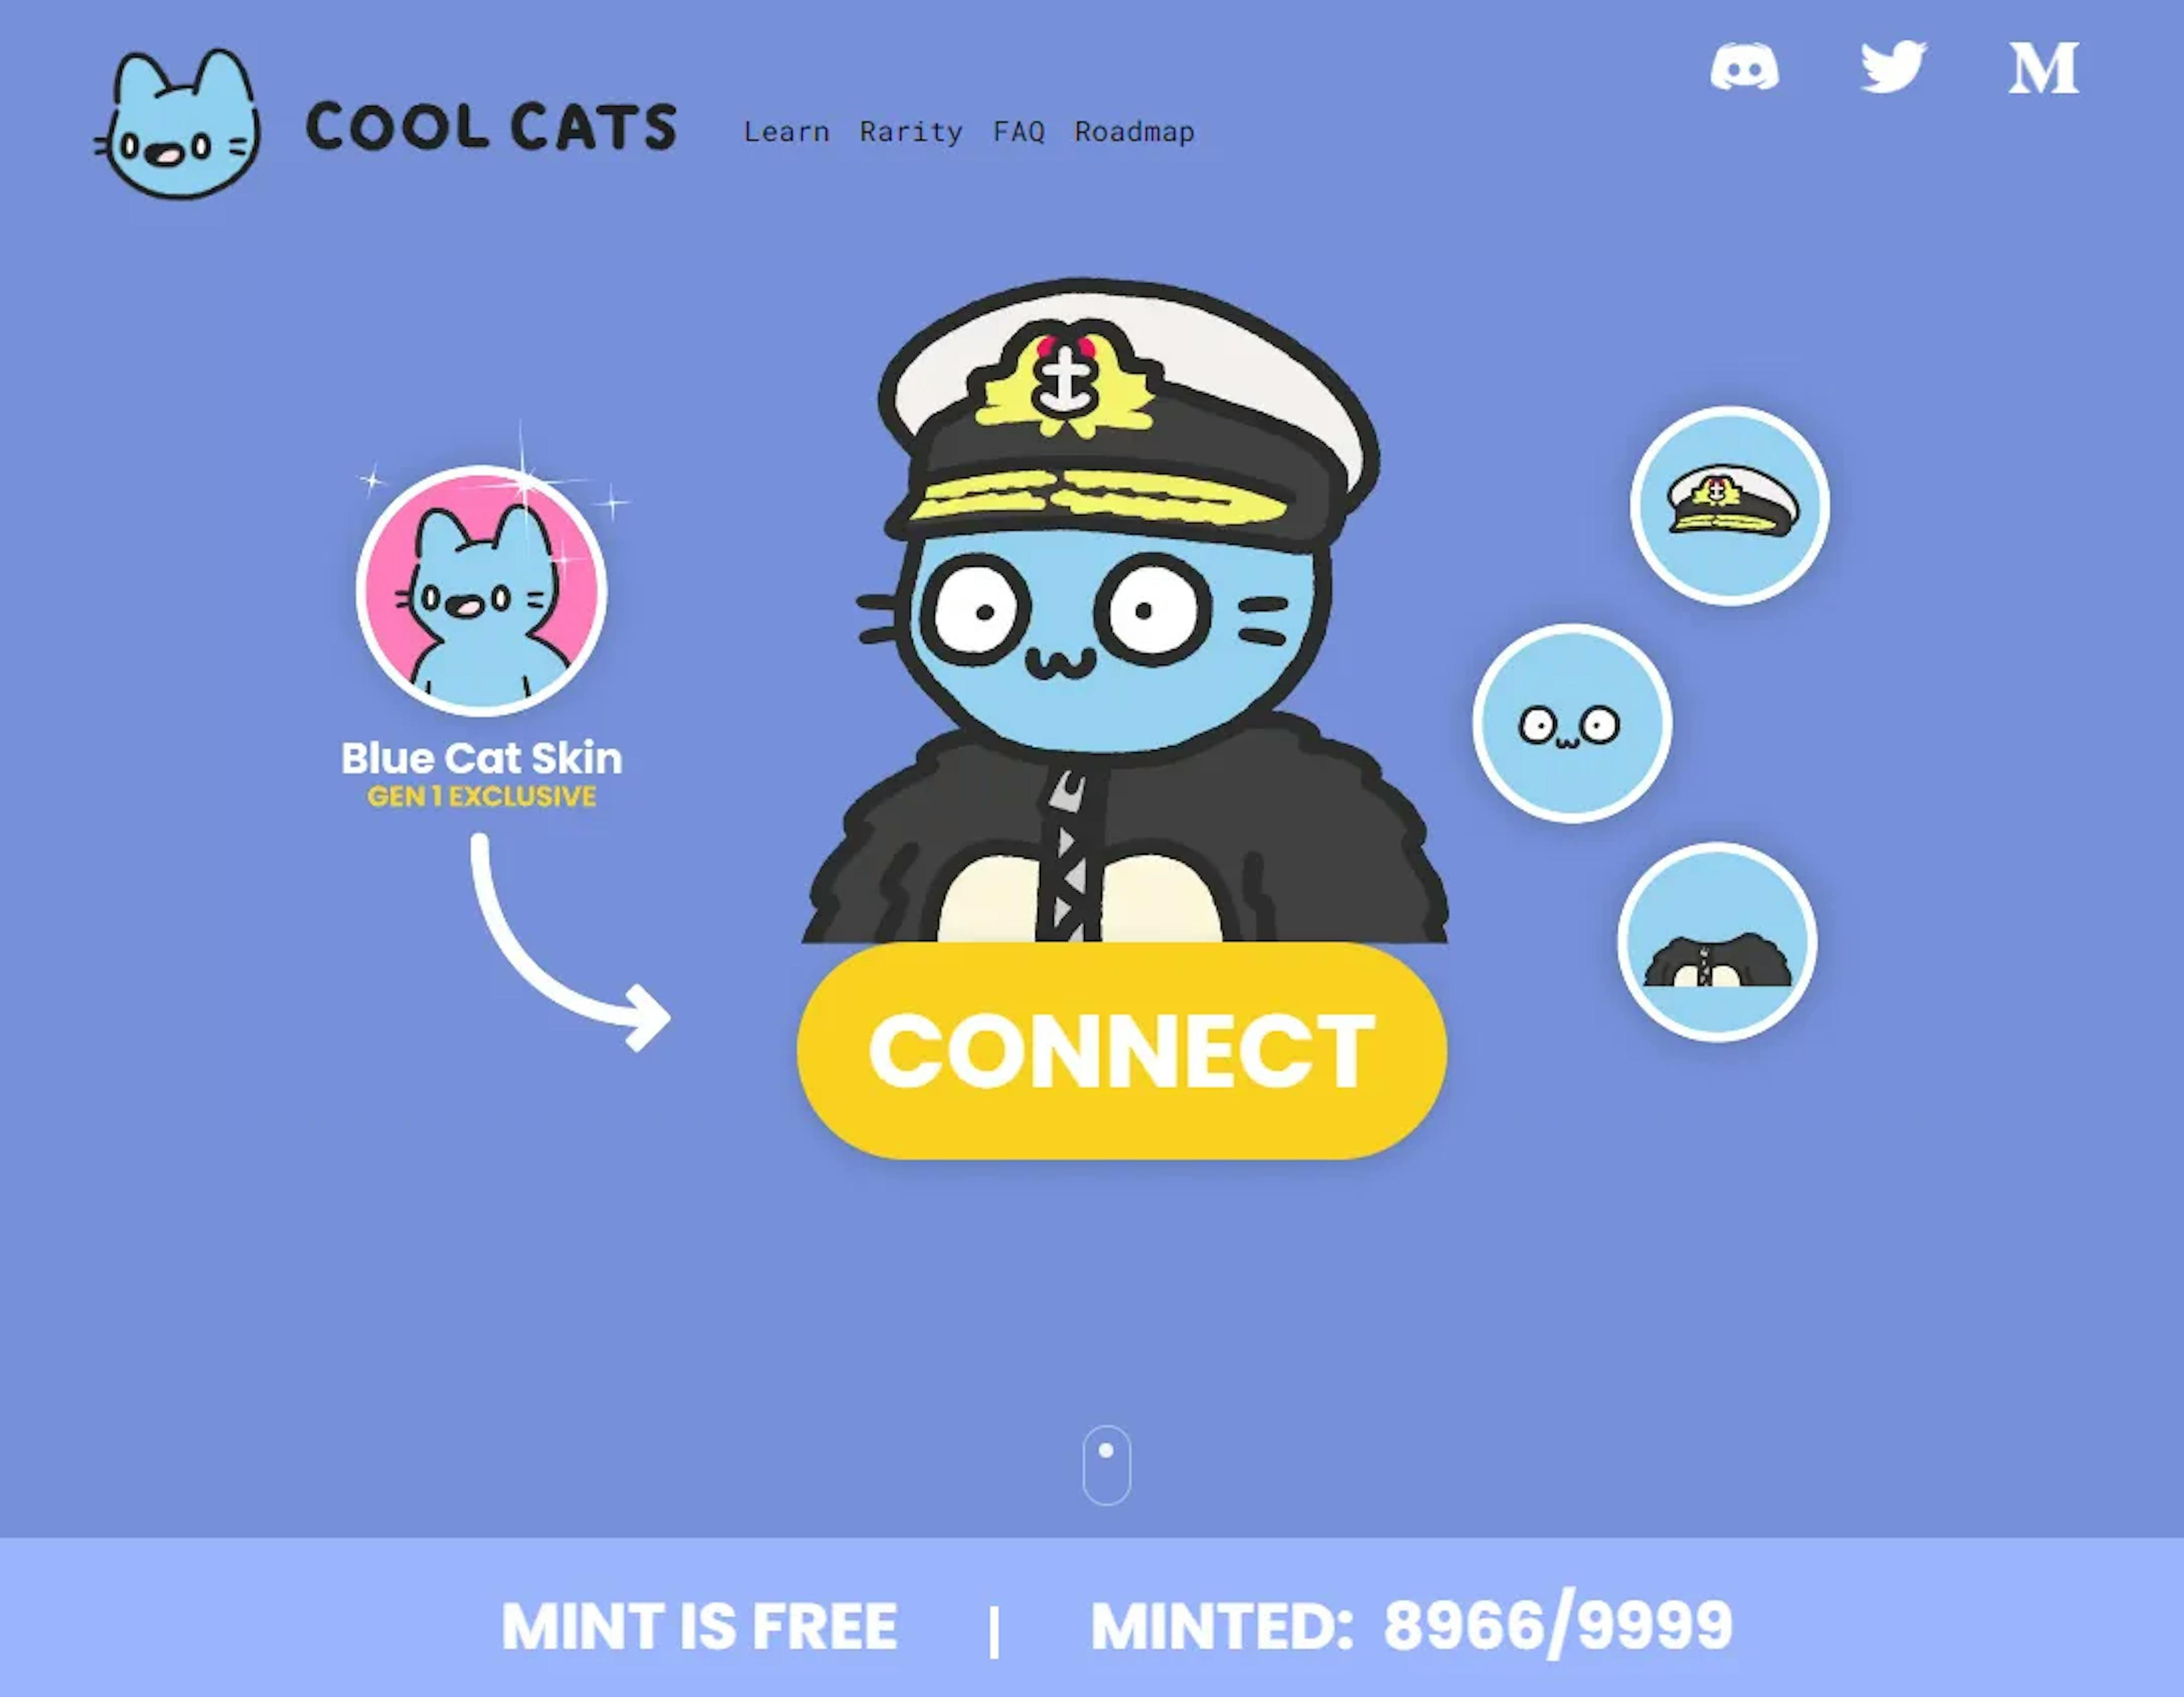 Se parece al sitio web de Cool Cats, ¿verdad? ¡Cuidado, esta es en realidad una captura de pantalla de un sitio de estafa real en curso que está tratando de engañar a las personas para sacarles sus NFT!